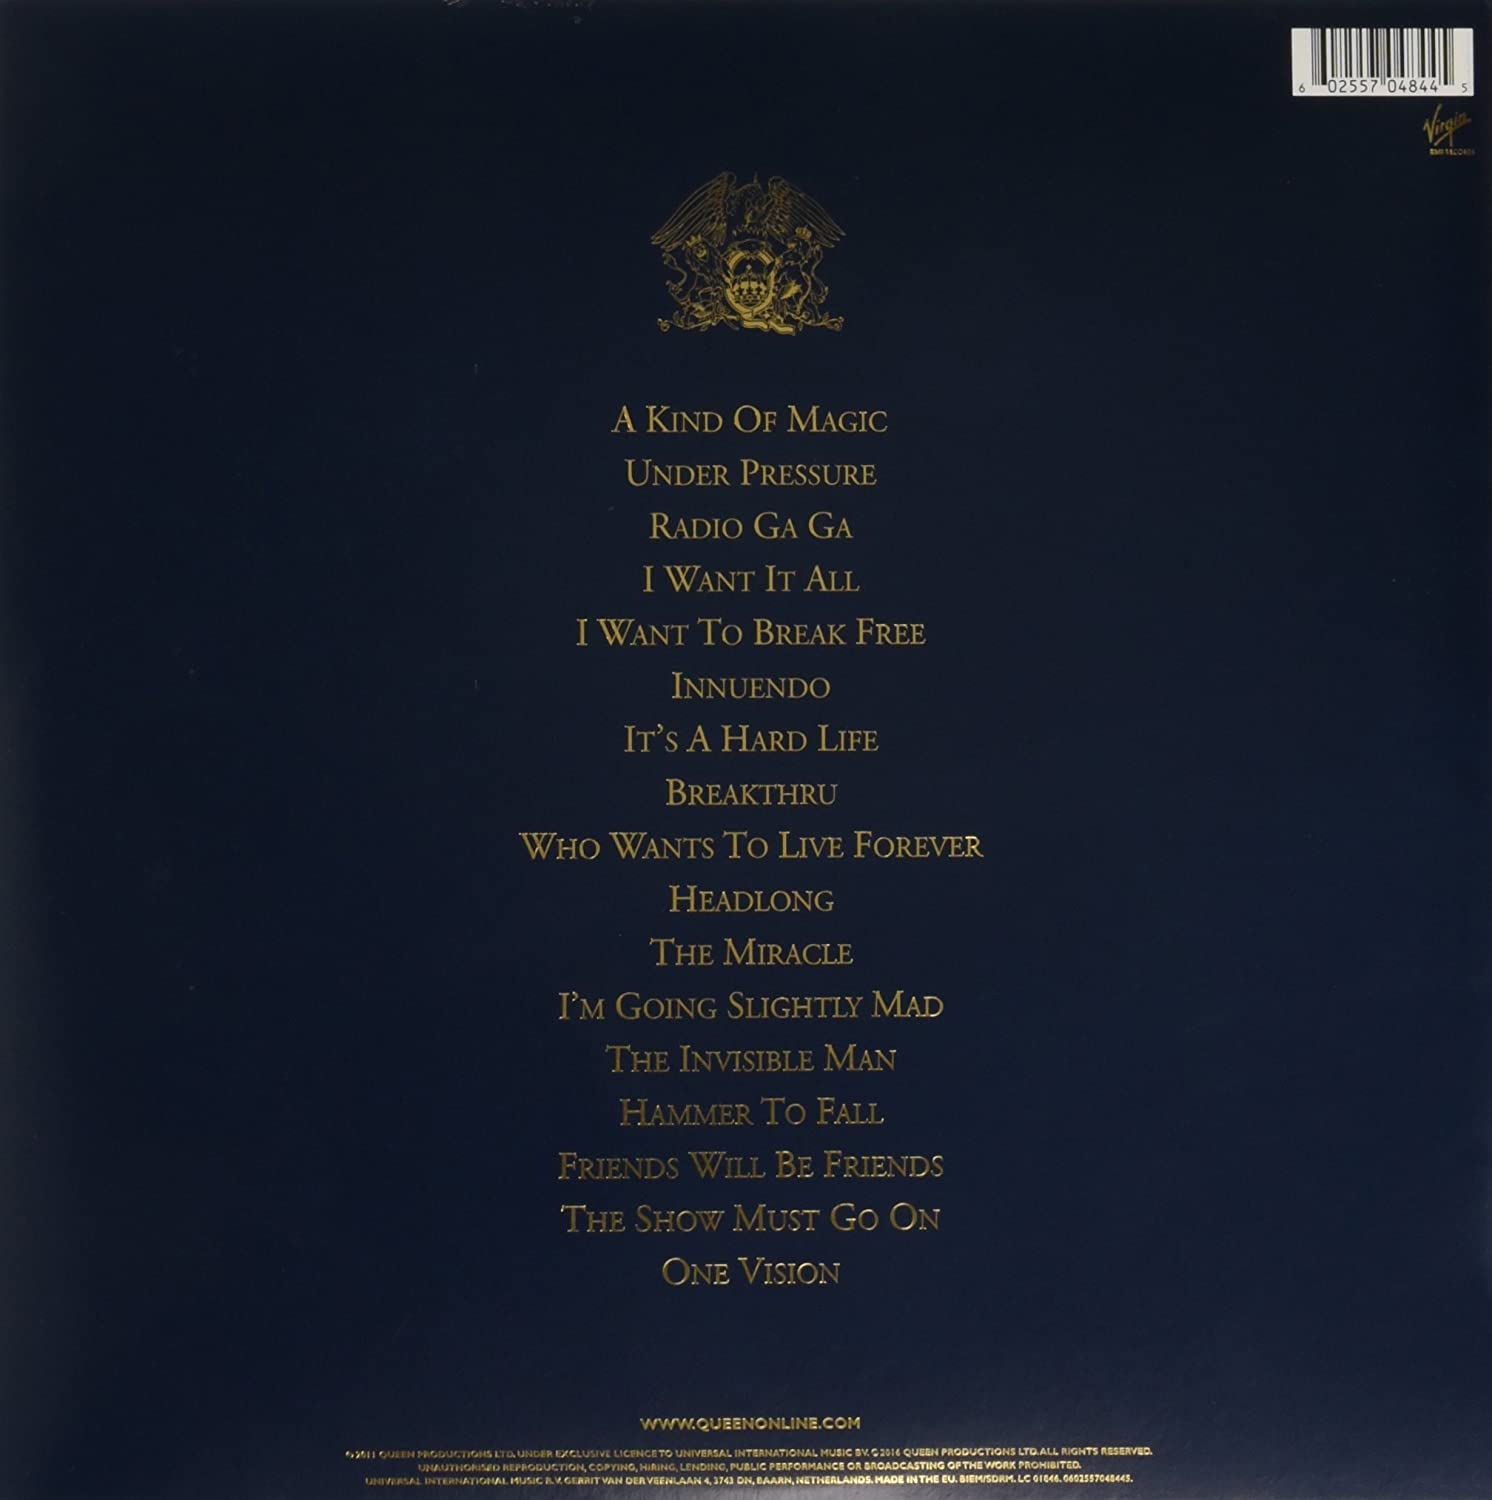 Queen - Greatest Hits II [Vinyl] 